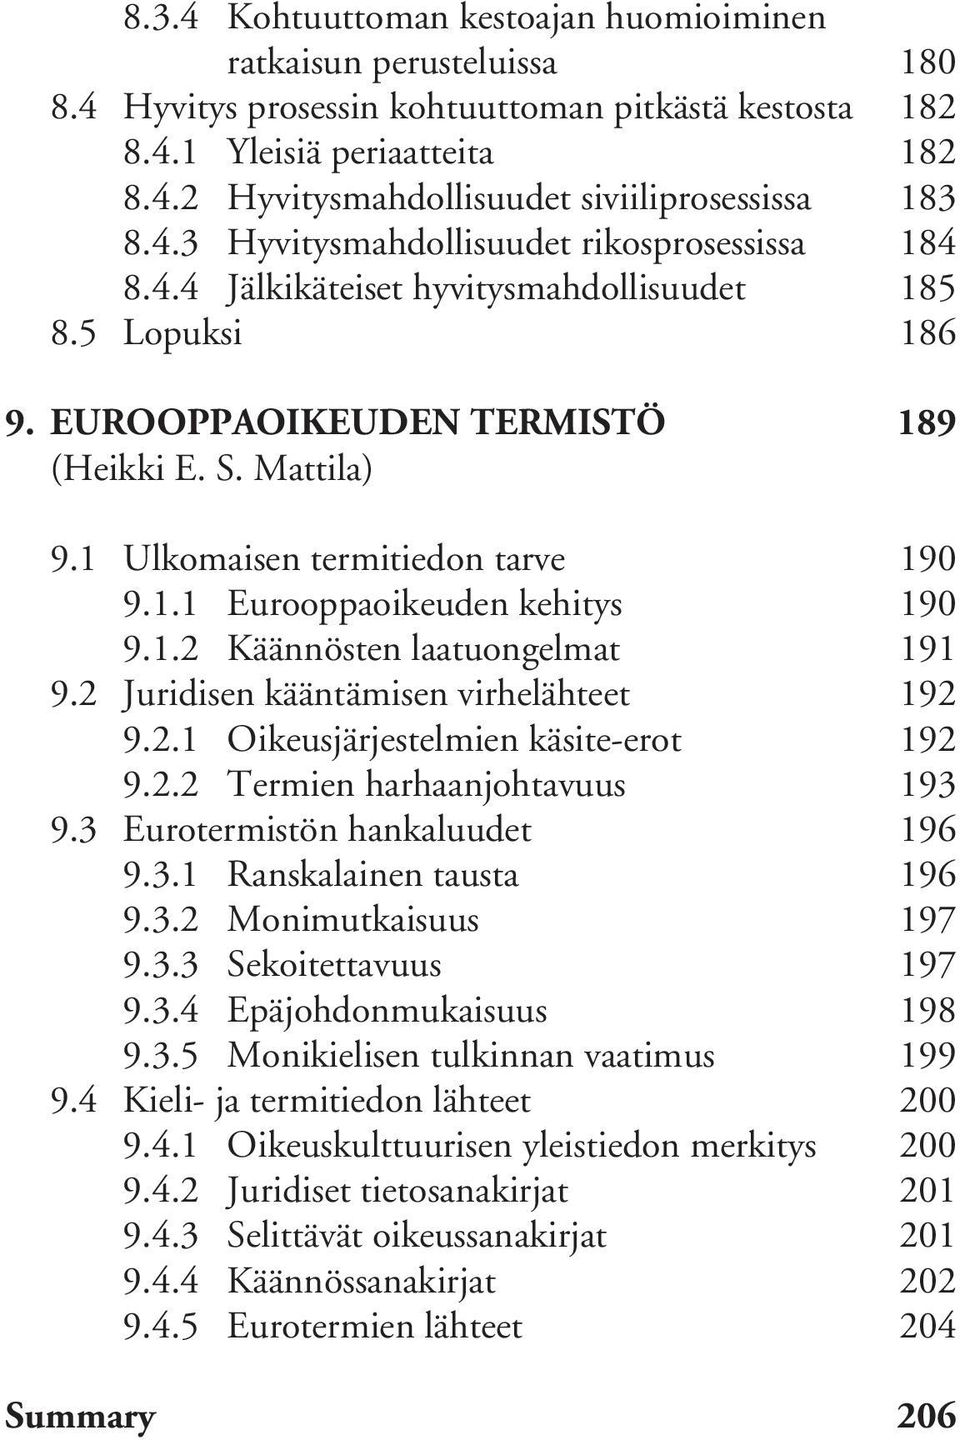 1 Ulkomaisen termitiedon tarve 190 9.1.1 Eurooppaoikeuden kehitys 190 9.1.2 Käännösten laatuongelmat 191 9.2 Juridisen kääntämisen virhelähteet 192 9.2.1 Oikeusjärjestelmien käsite-erot 192 9.2.2 Termien harhaanjohtavuus 193 9.